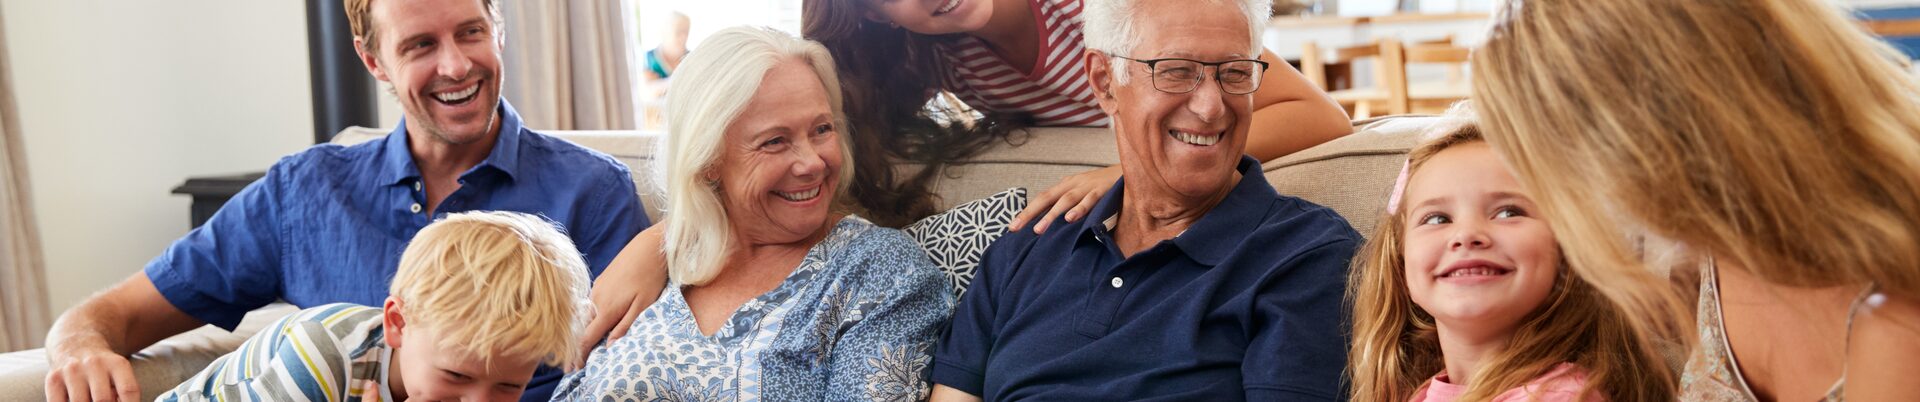 Eine Familie mit drei Generationen Großeltern, Eltern und Jugendlichen sowie Kleinkindern sitzt lachend auf einem Sofa